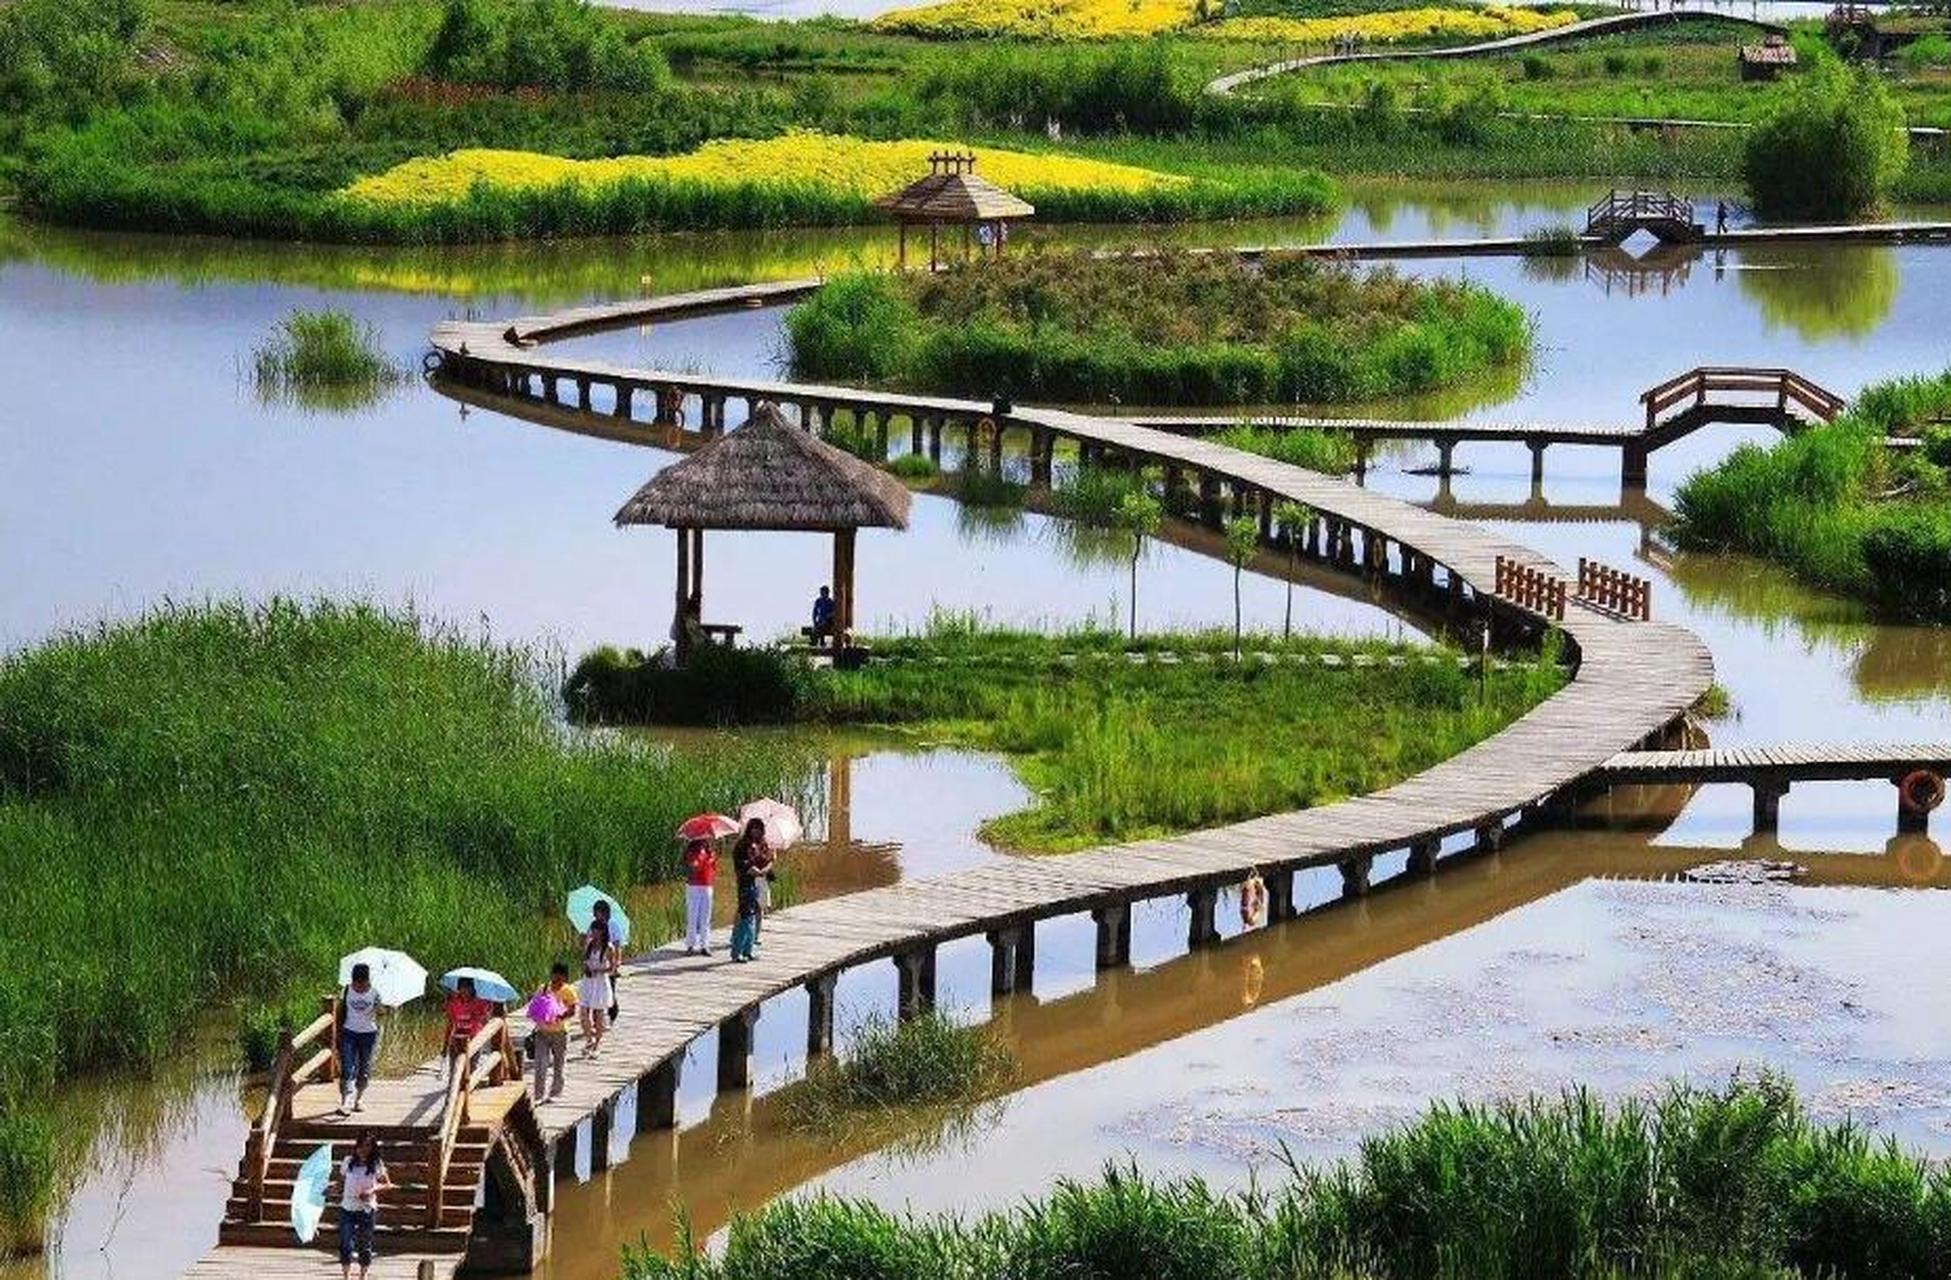 郑州黄河国家湿地公园位于郑州市区以北,拥有独特的黄河文化资源,是一